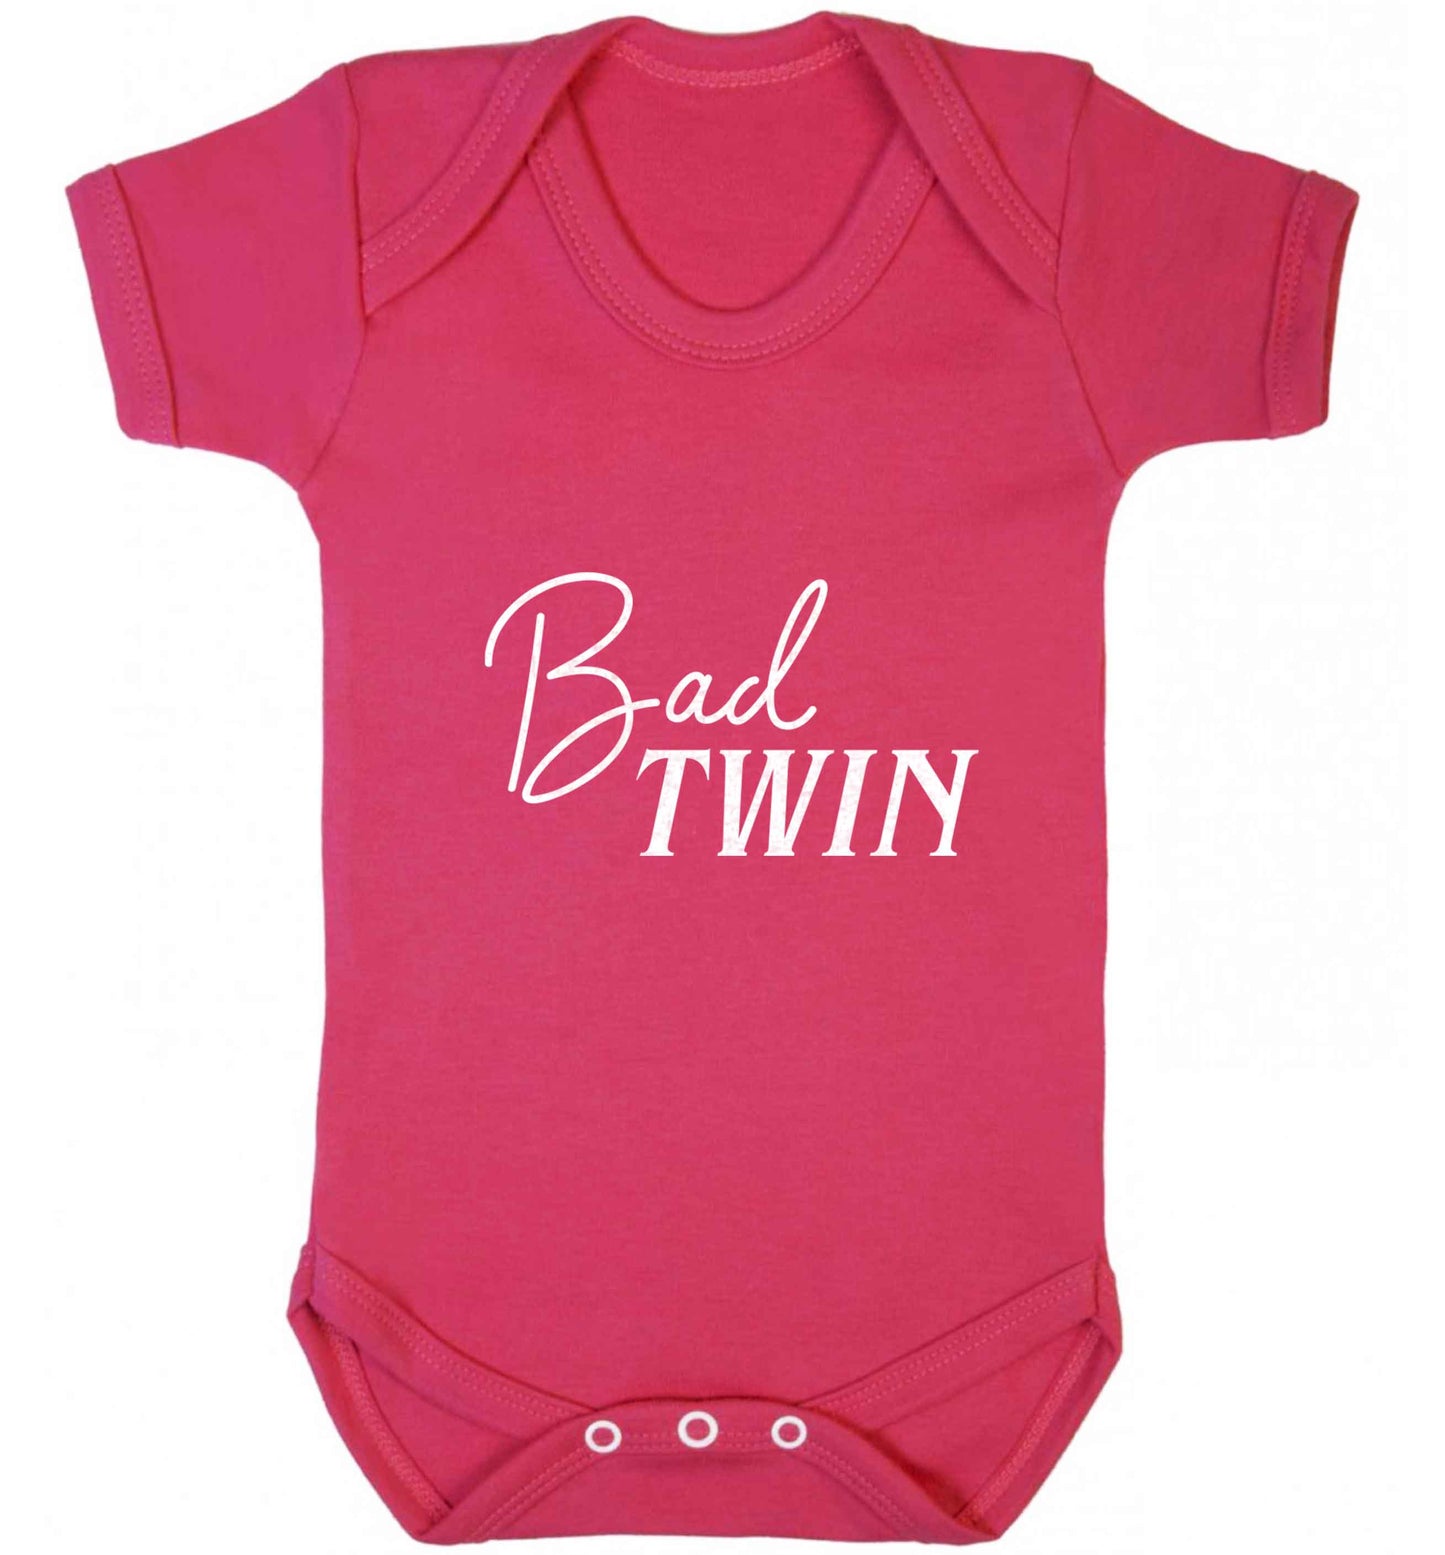 Bad twin baby vest dark pink 18-24 months